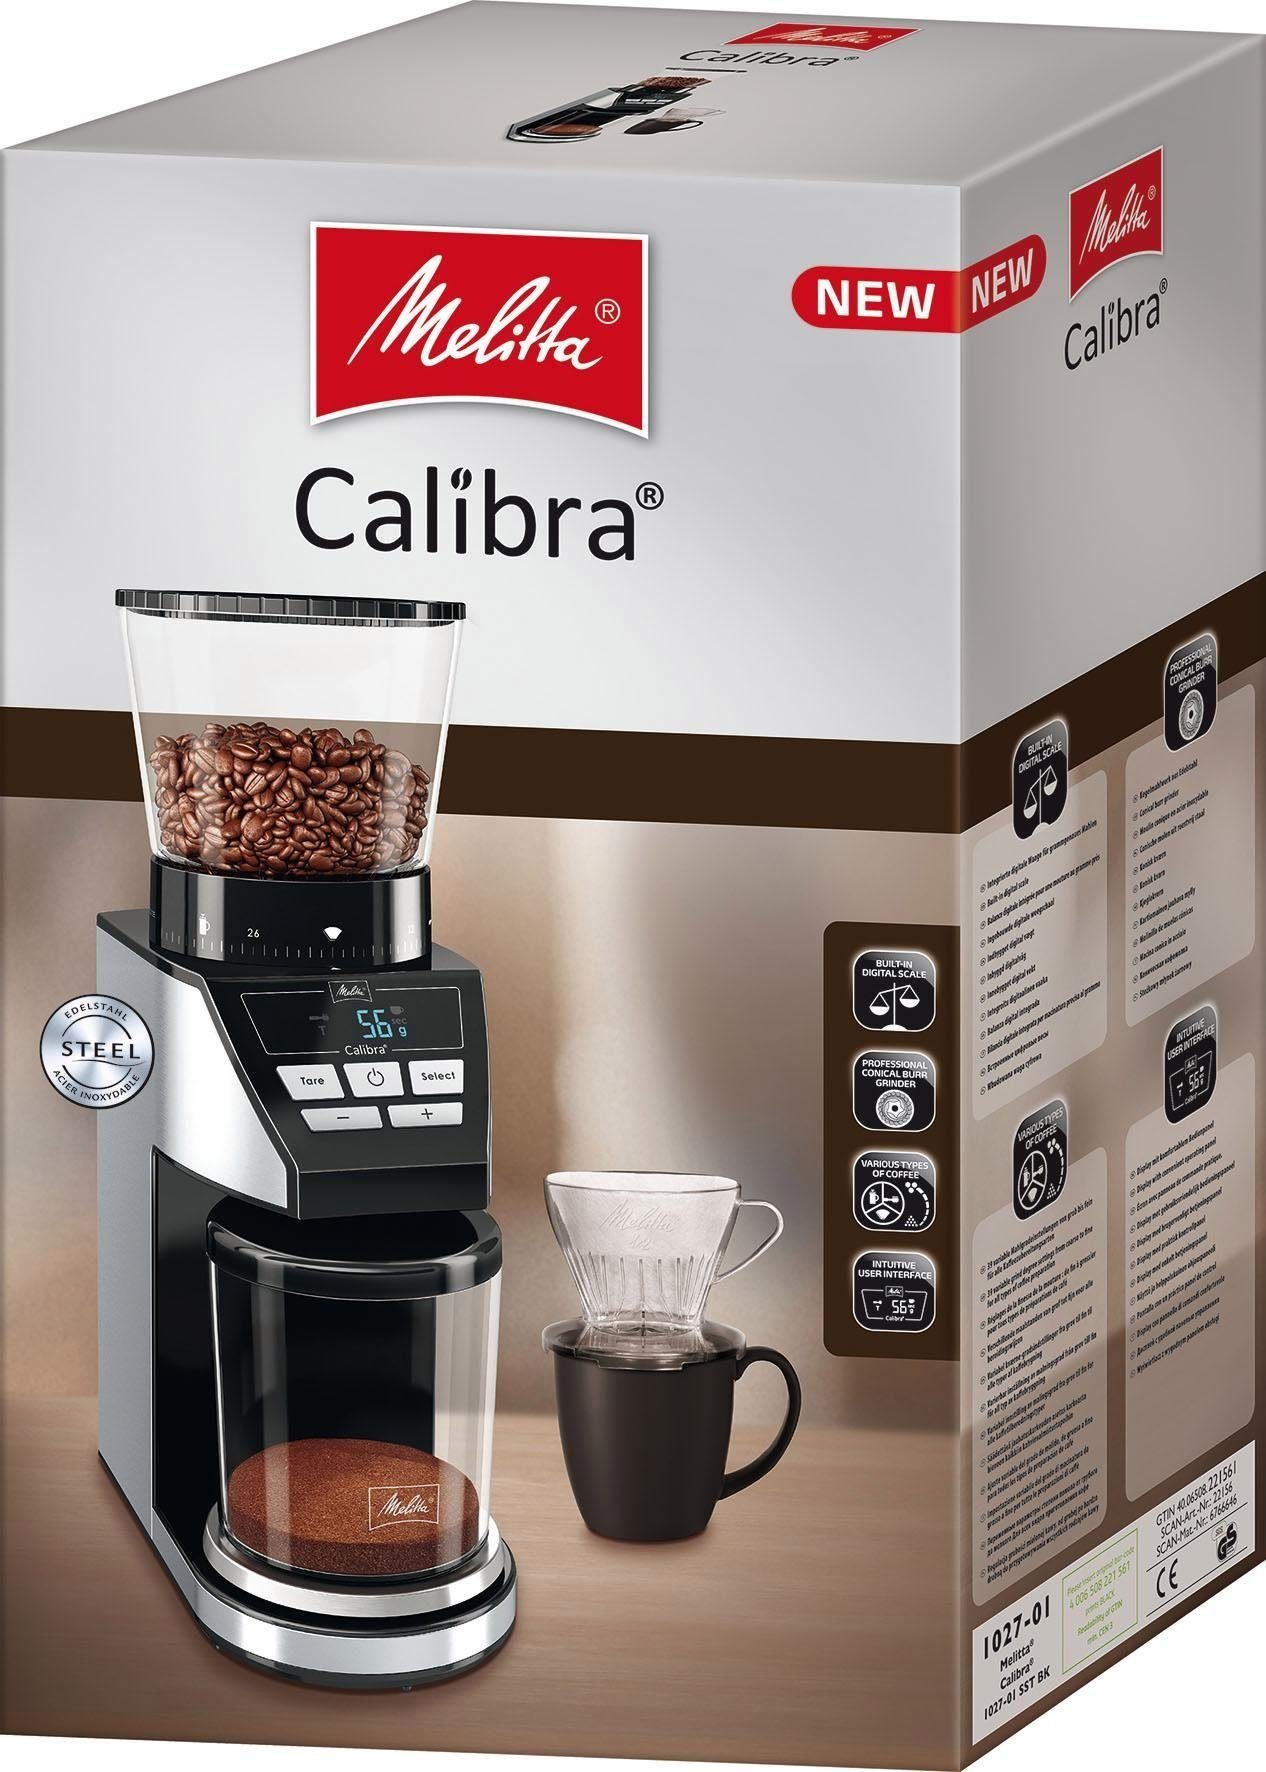 W, 1027-01 Calibra 375 Kegelmahlwerk, Kaffeemühle g 160 Melitta schwarz-Edelstahl, Bohnenbehälter